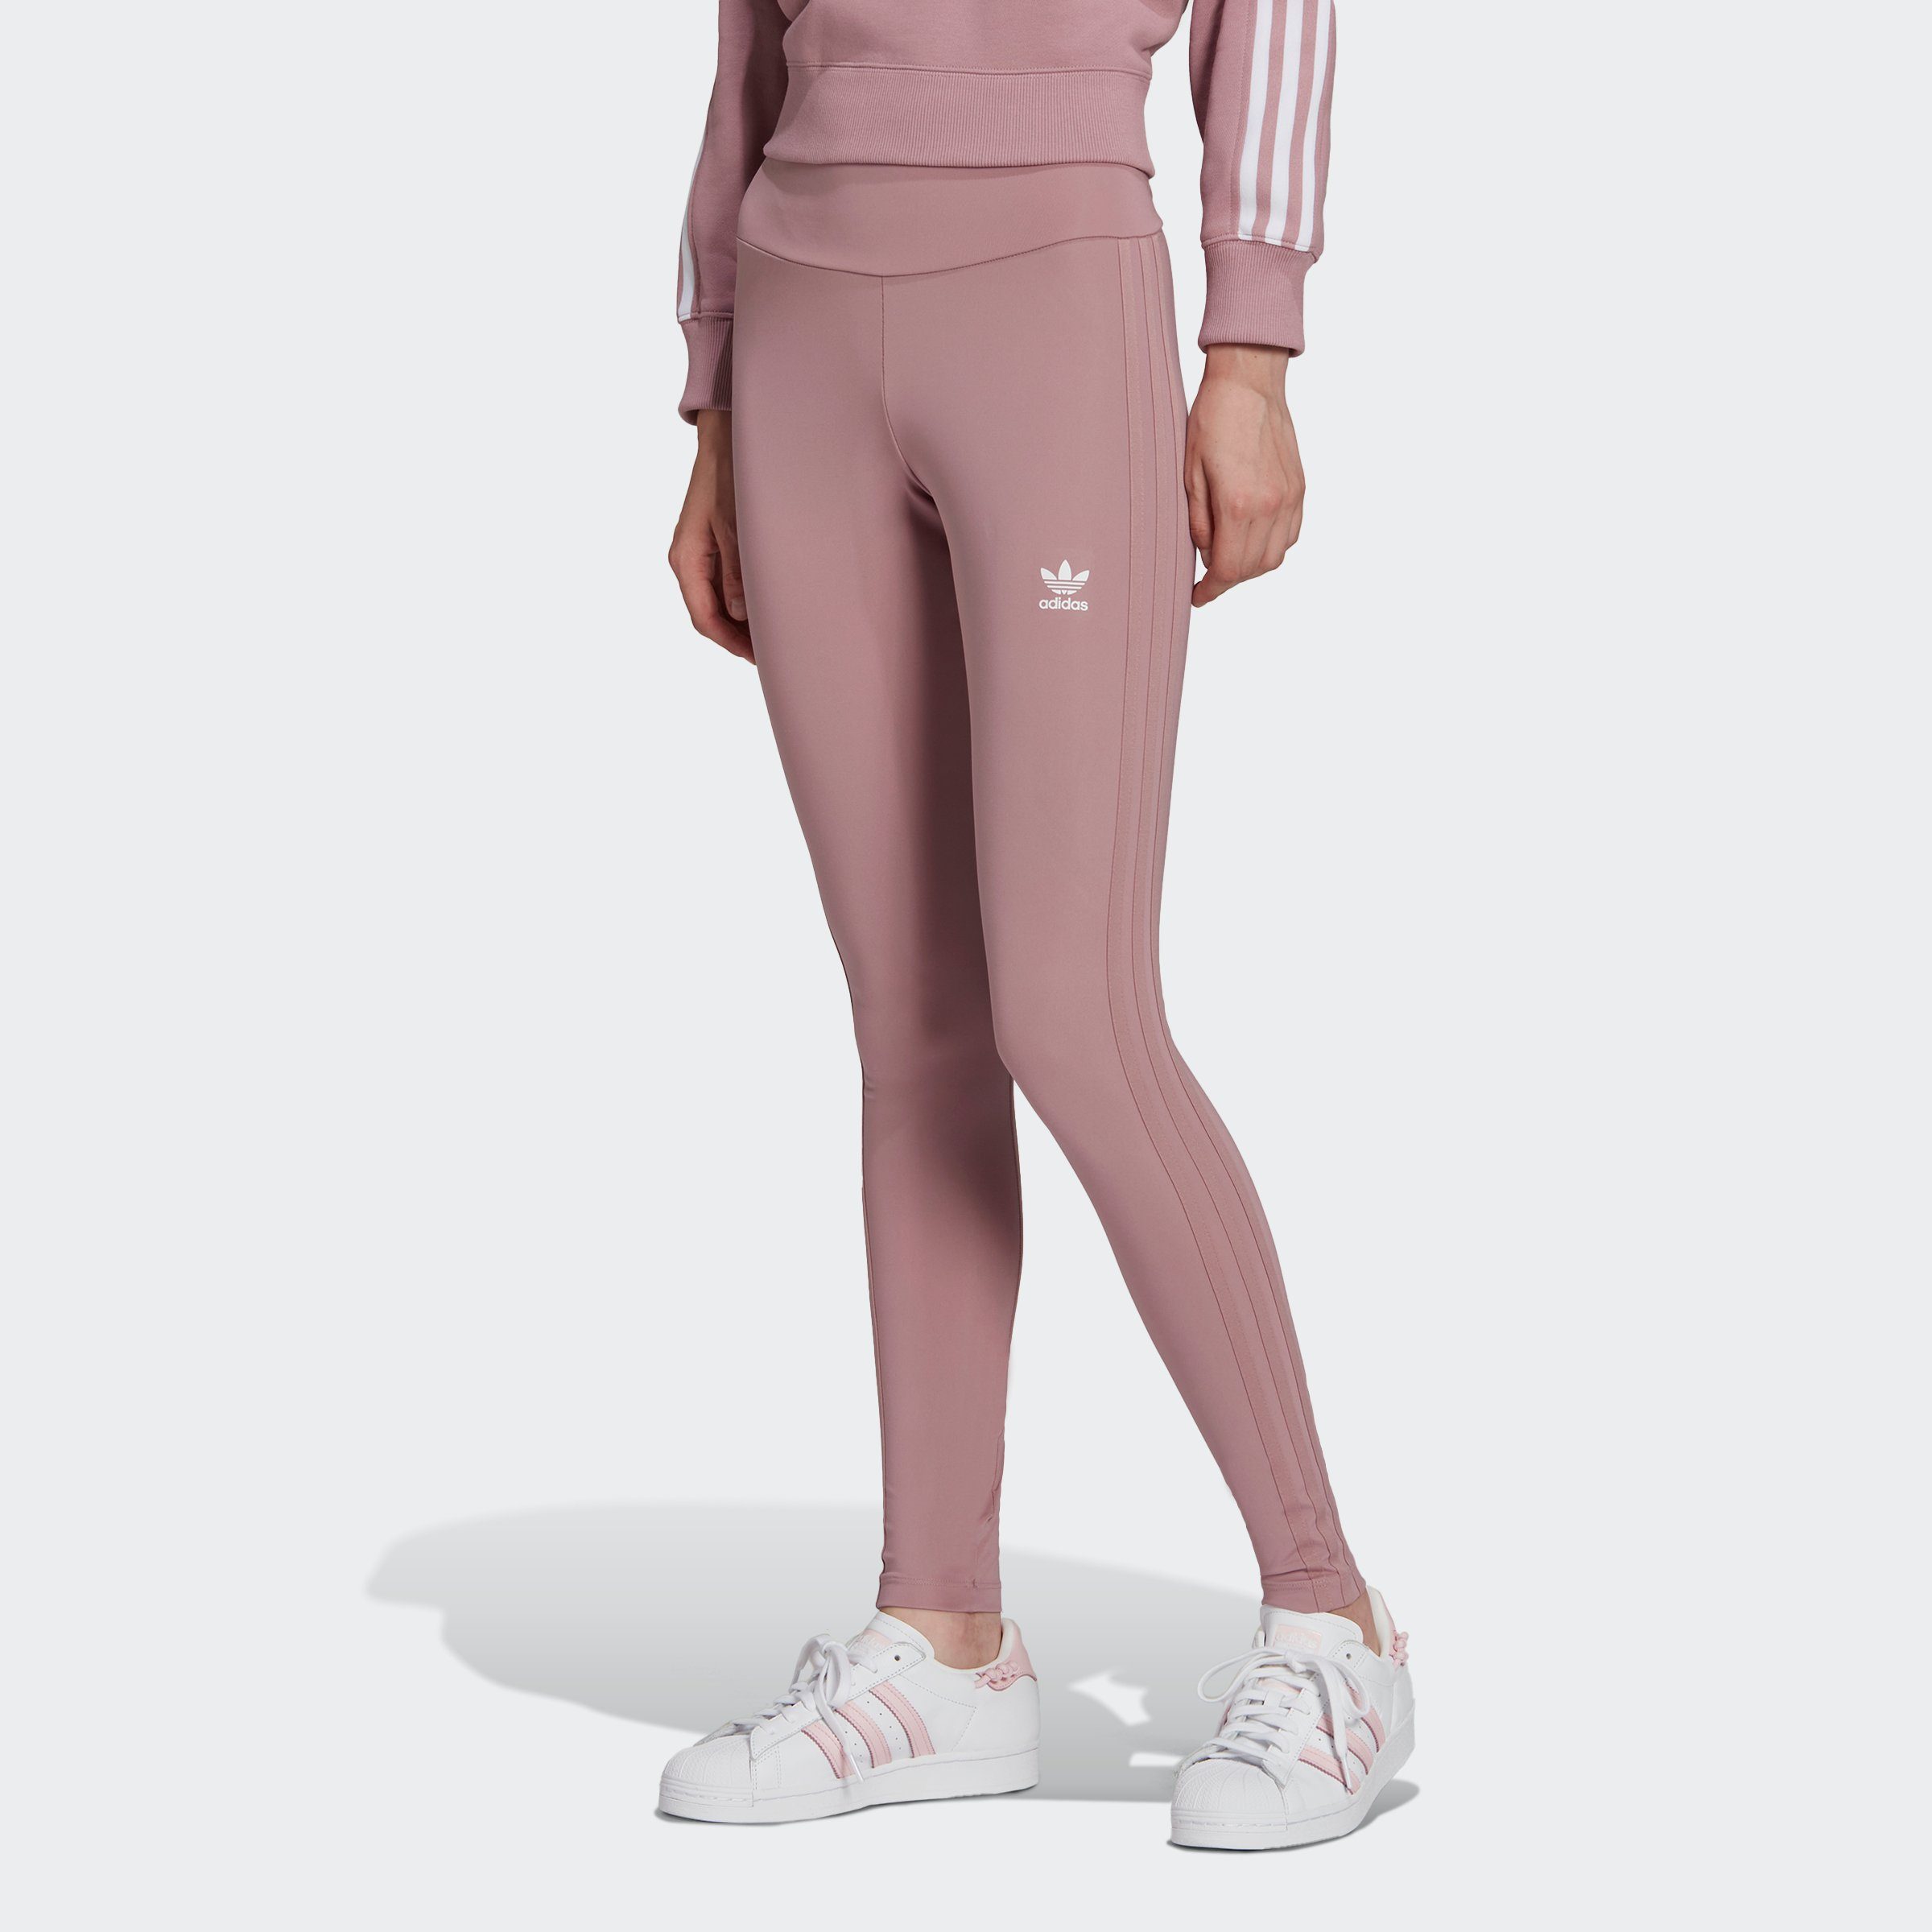 adidas Originals Damen Sporthosen online kaufen | OTTO